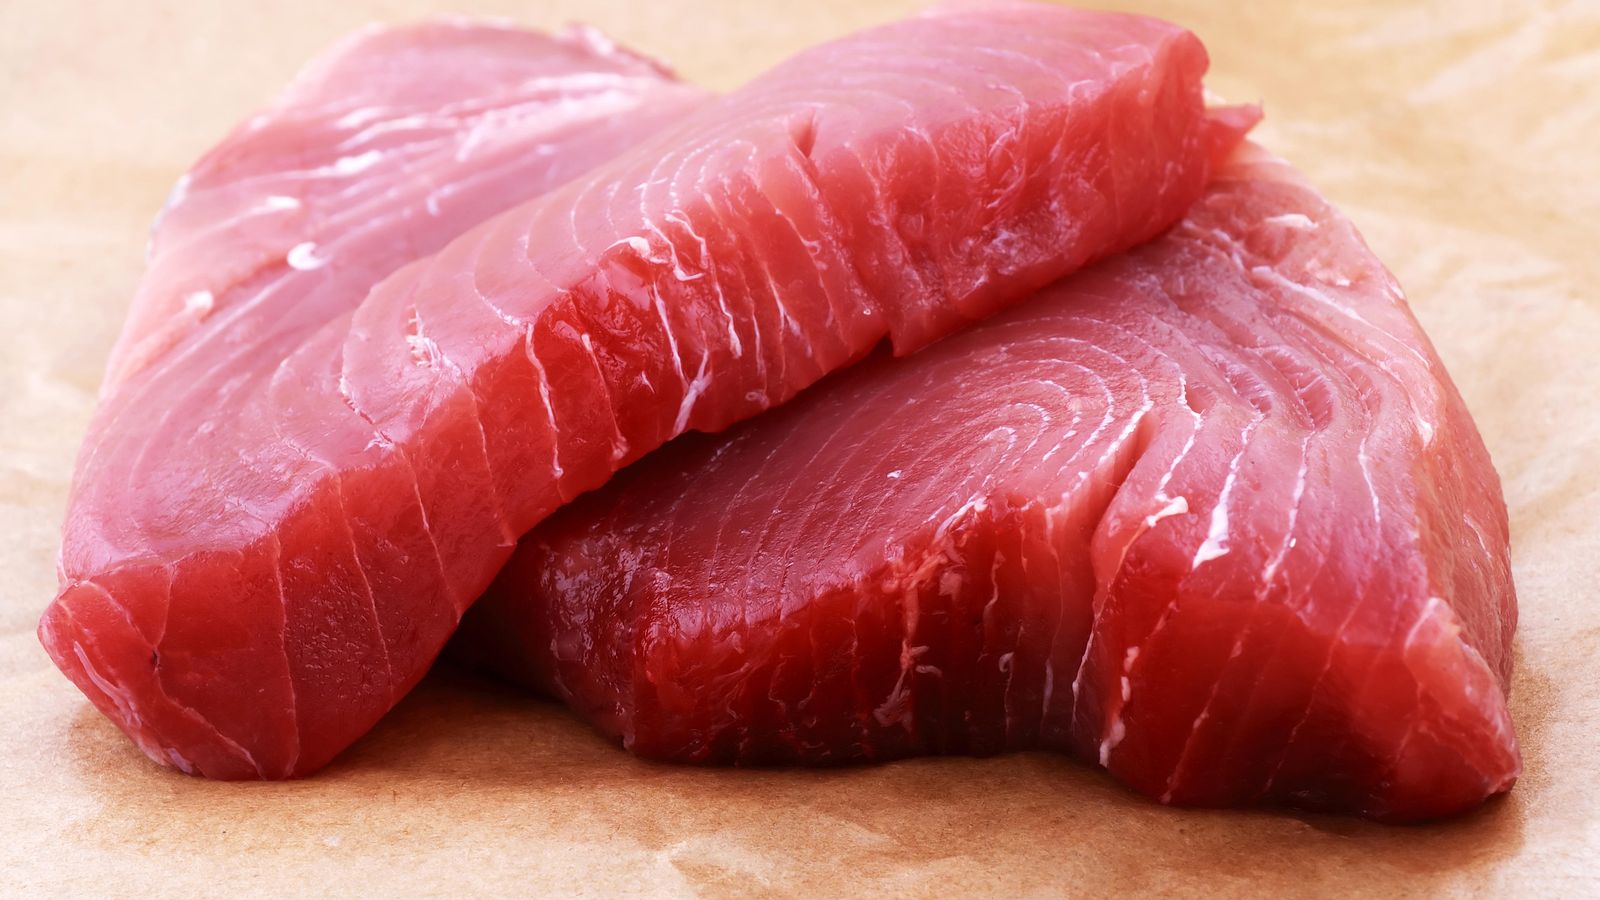 Foto: El atún es uno de los pescados con mayor concentración de omega 3. (corbis)